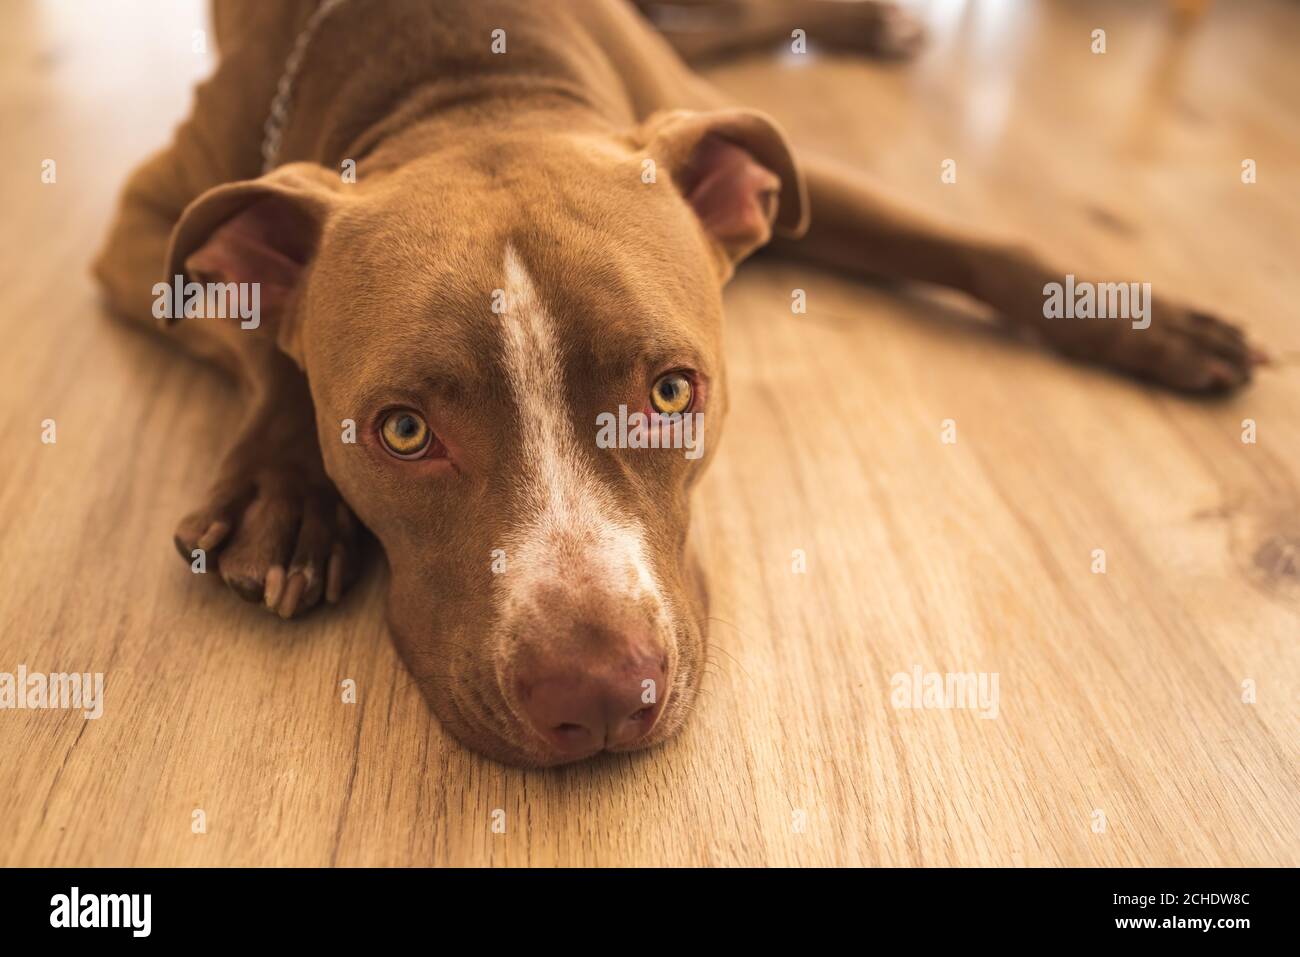 Perro tumbado en el suelo de madera interior, marrón amstaff terrier descansando, grandes ojos tristes mirando la cámara Foto de stock